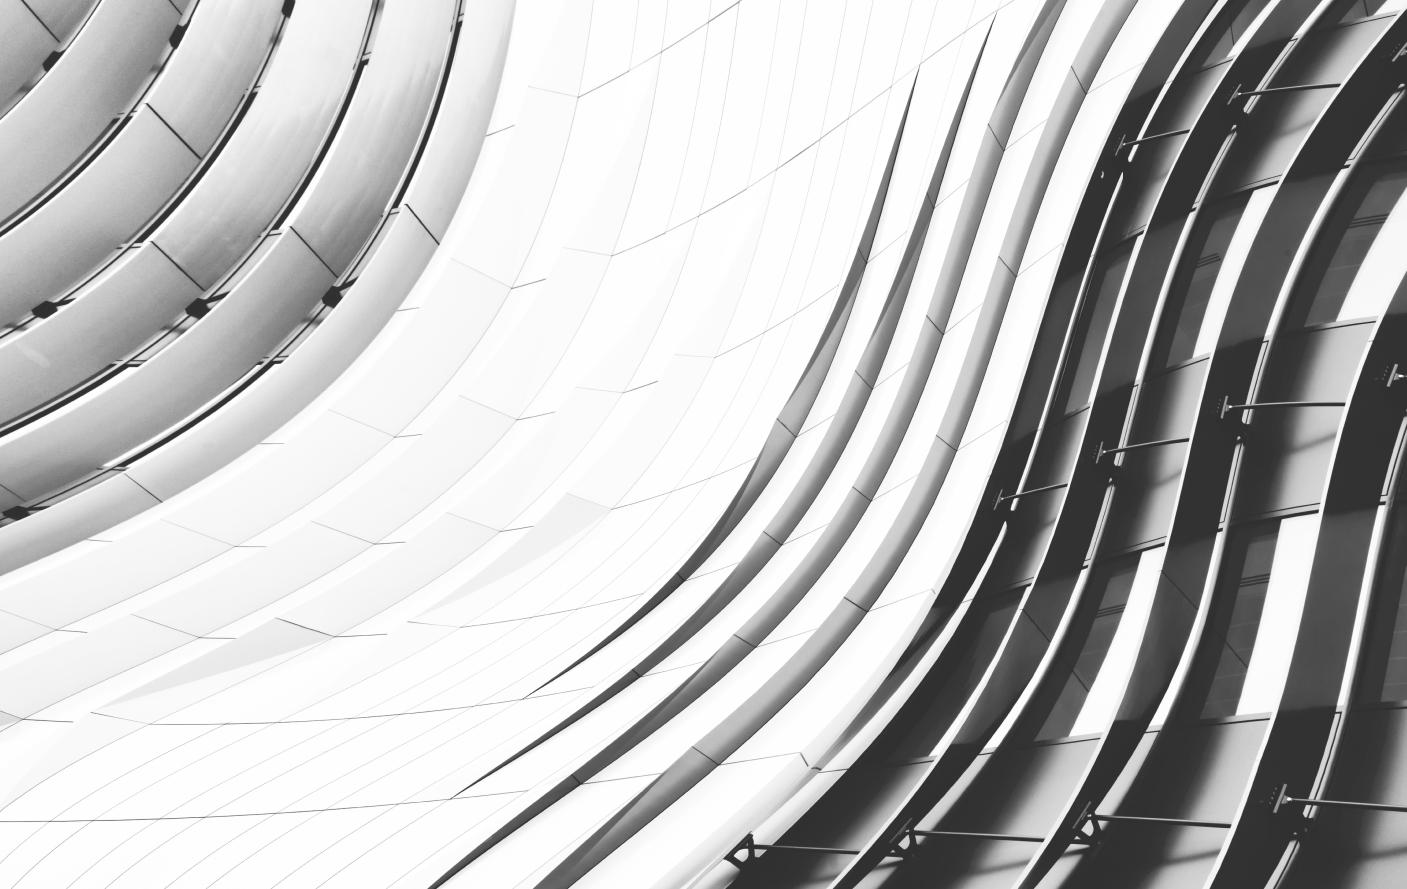 Arte abstrata com curvas arquitetônicas em preto e branco